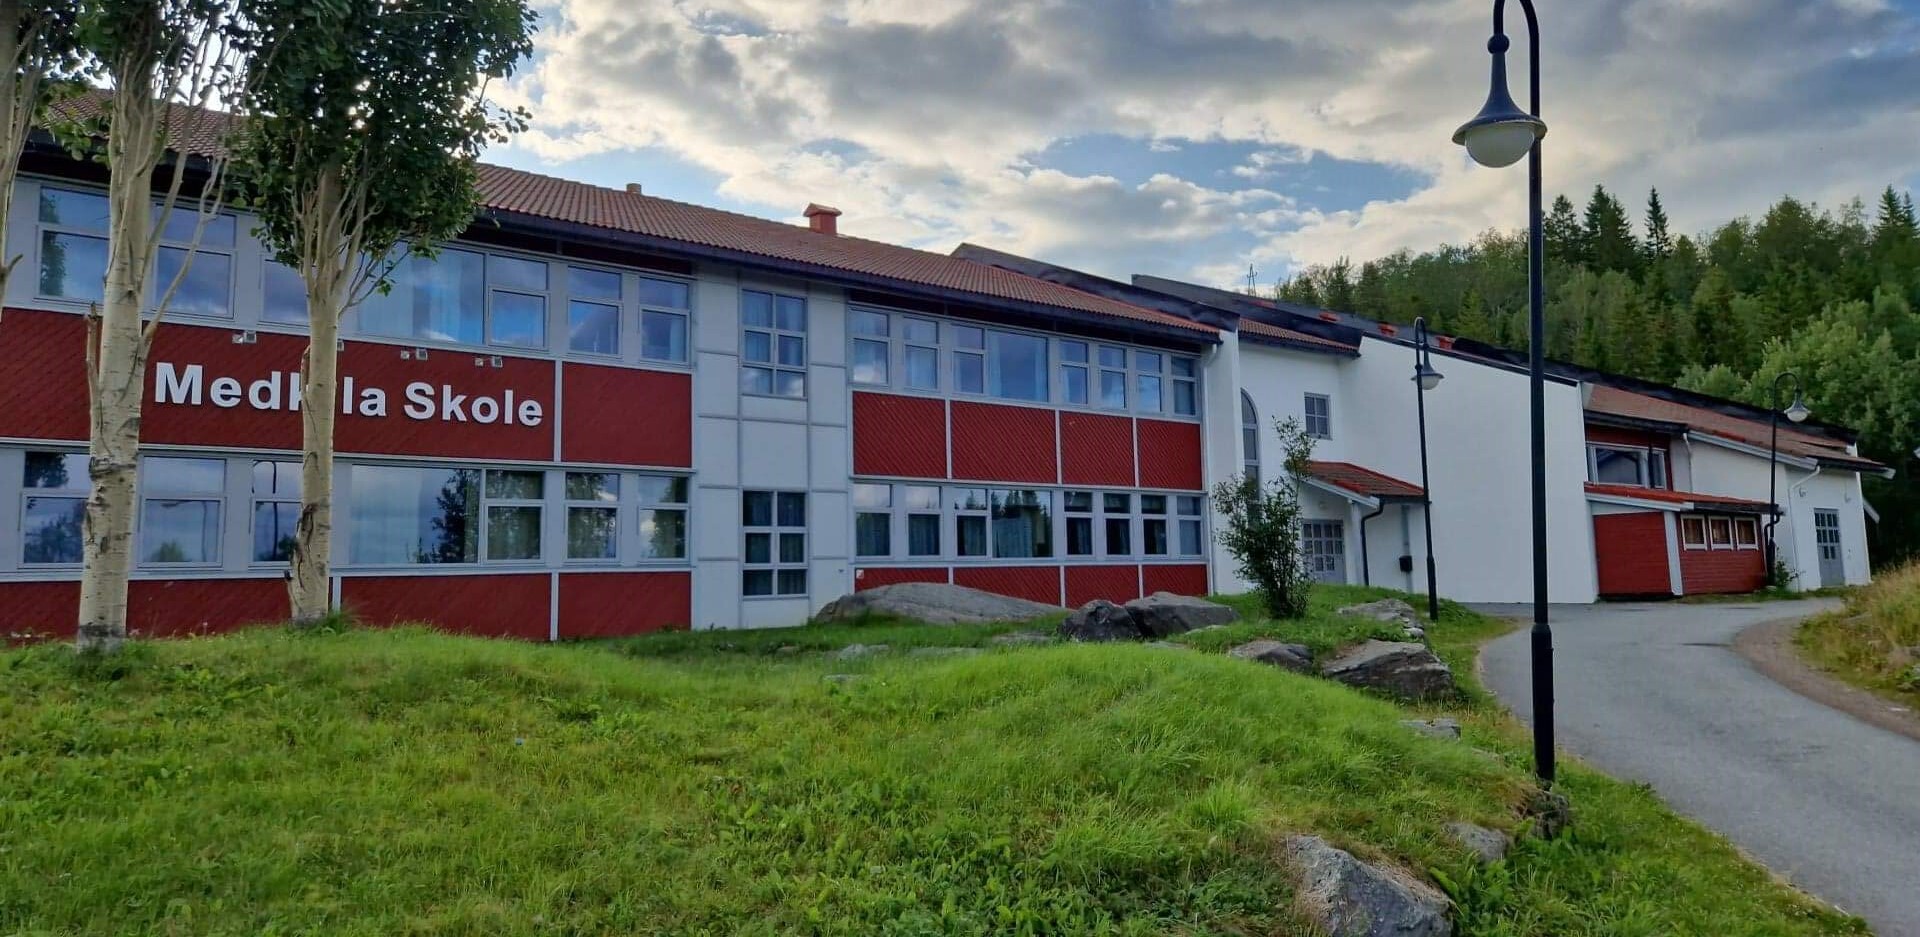 Harstad kommune Medkila skole